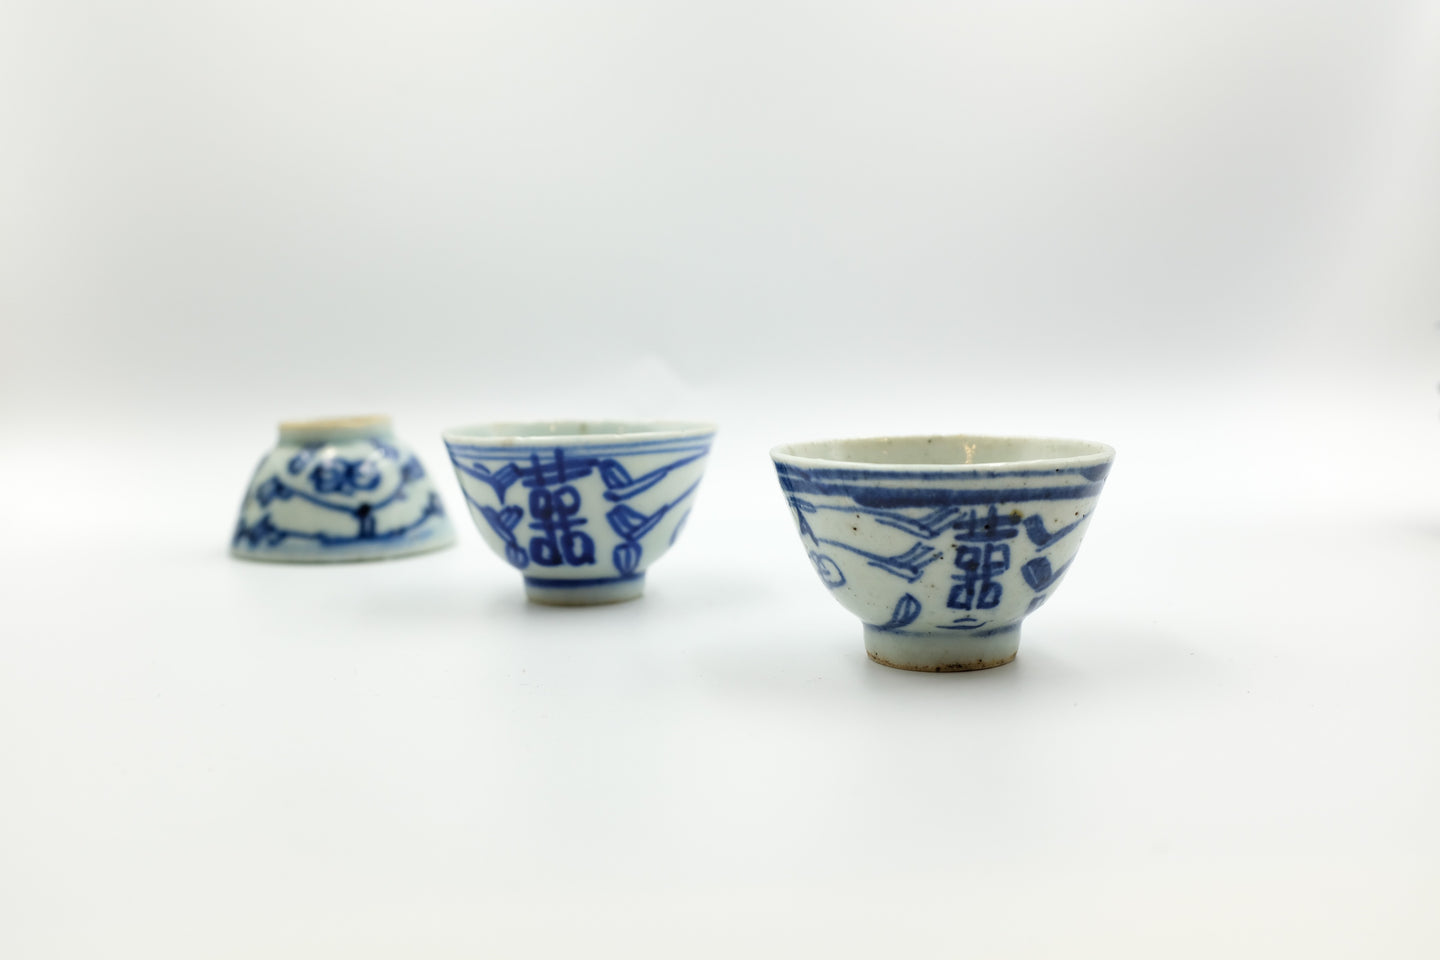 Qing Dynasty Cups